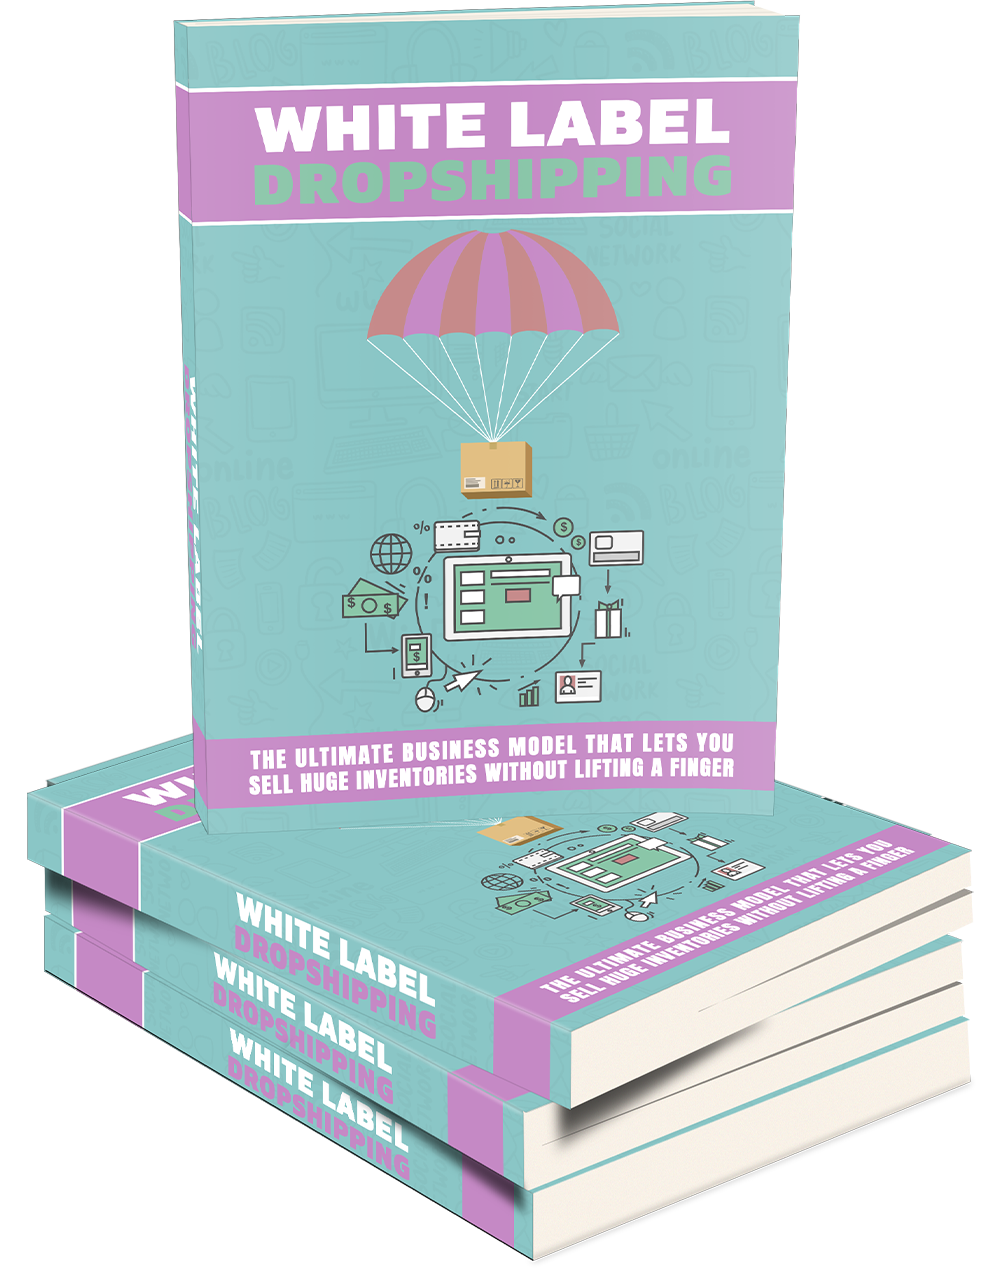 White Label Dropshipping E-Book